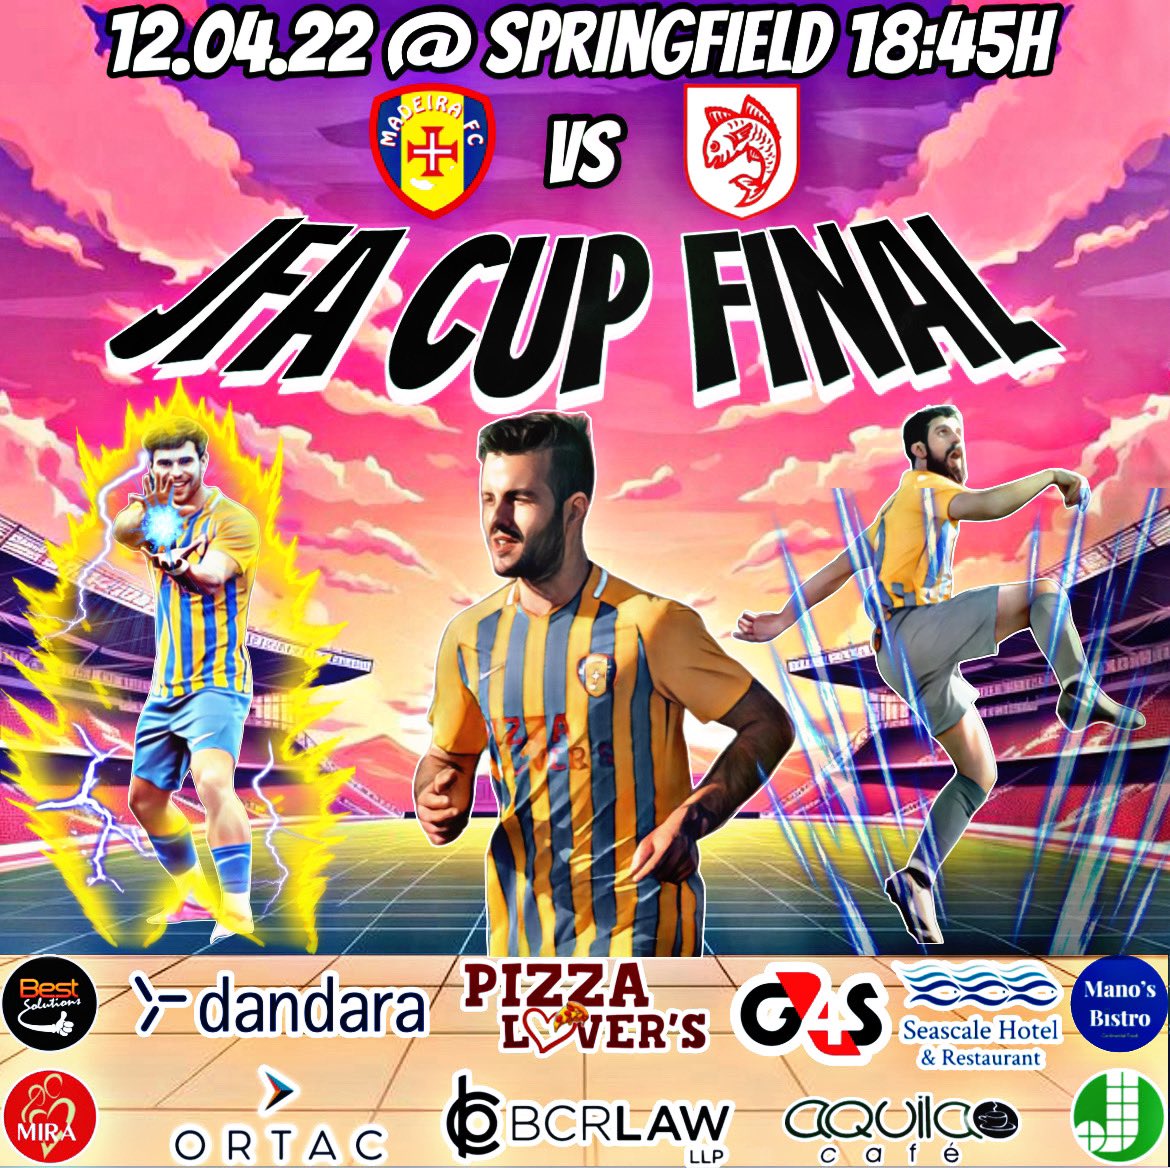 JFA Cup Final this Friday 18:45h at Springfield Stadium vs @stbreladefc | Taça de Jersey está Sexta-feira 18:45h no Estádio do Springfield contra o St Brélade FC